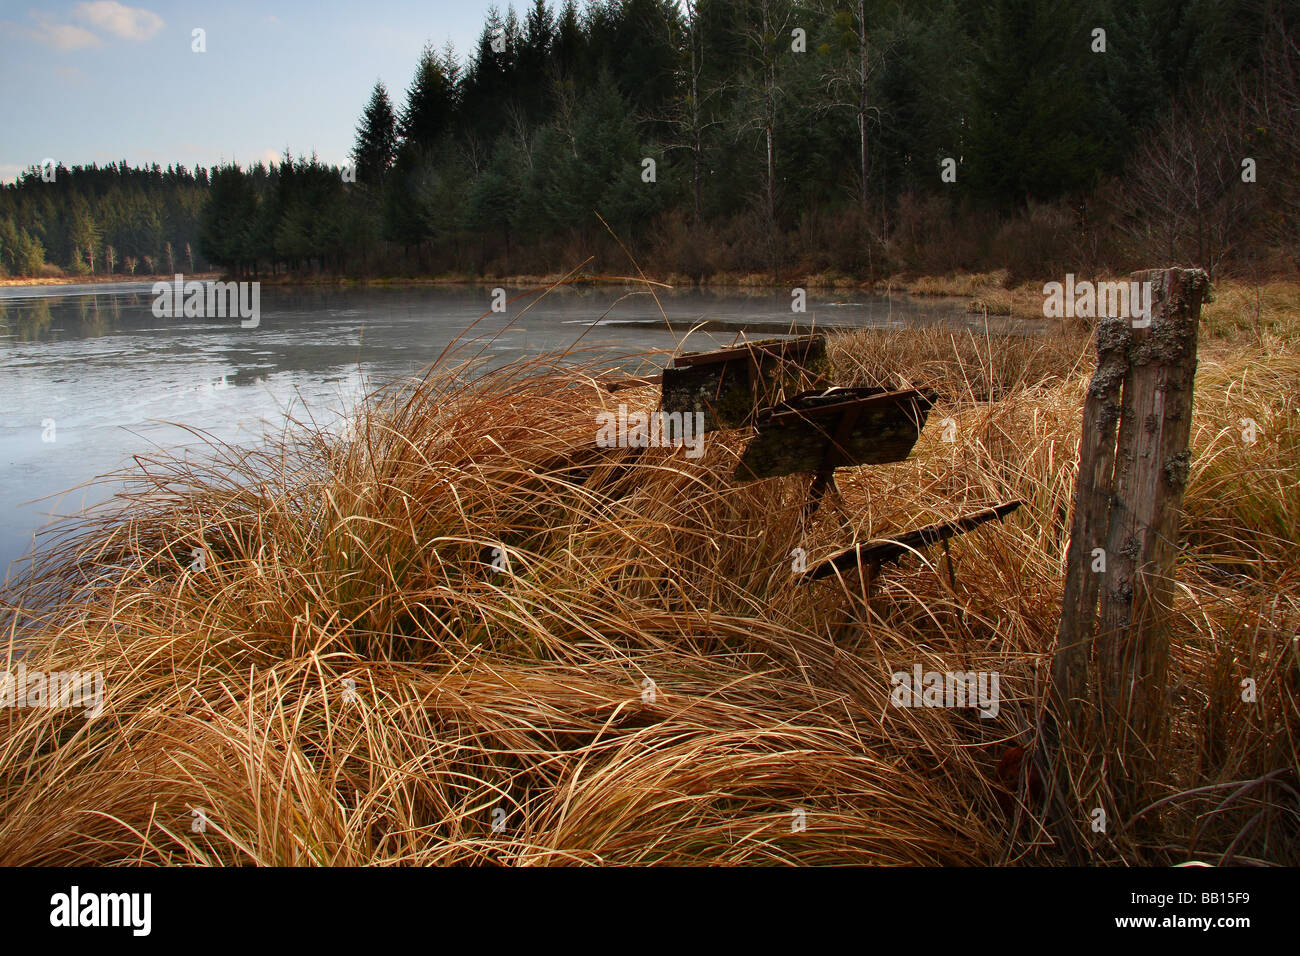 Une petite roue de l'eau pourrie parmi les herbes sèches sur le côté d'un lac en hiver. Limousin. La France. Banque D'Images